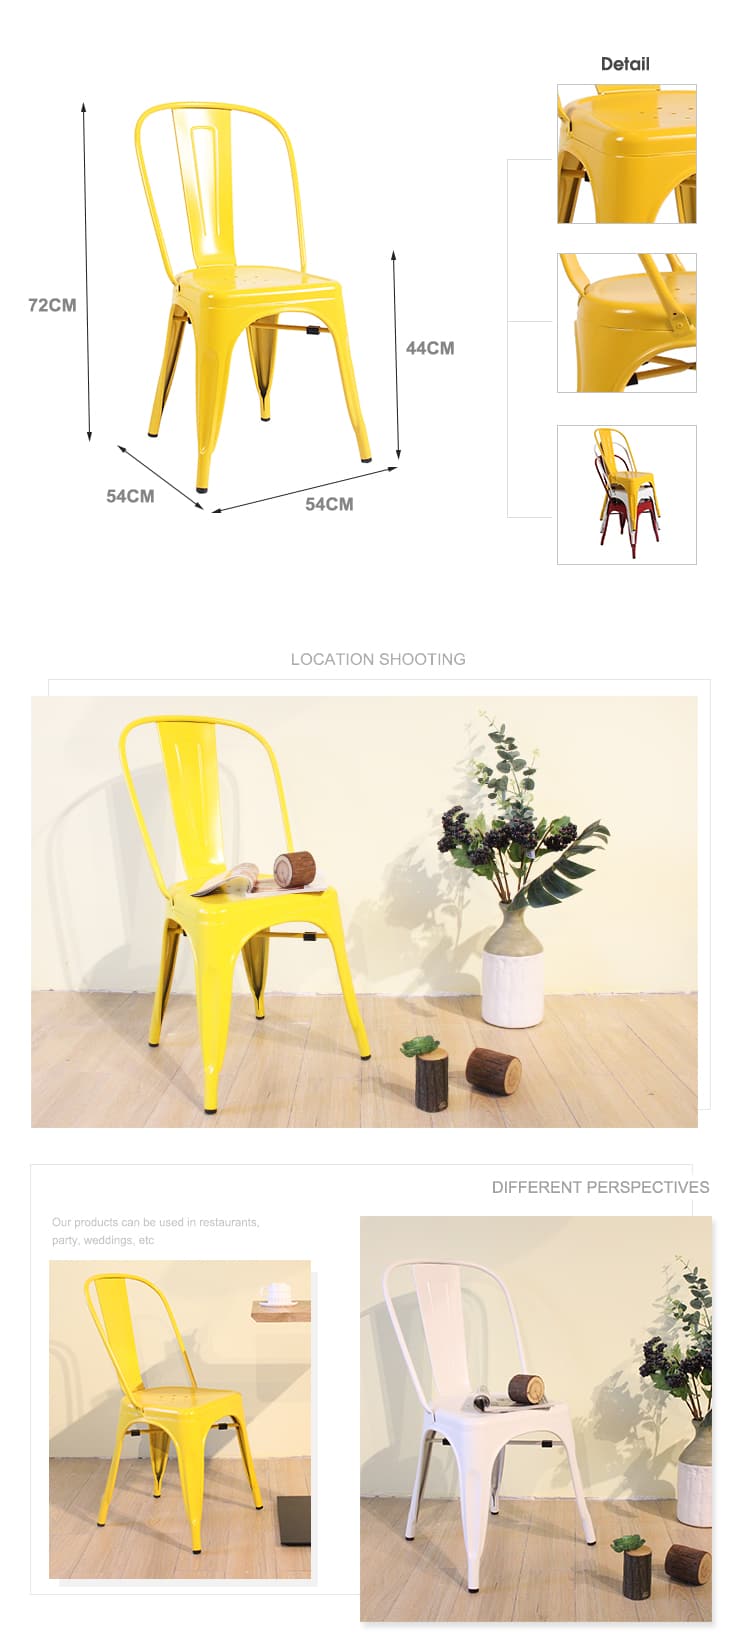 Tolix stol är en ikon inom möbeldesign med den iögonfallande gula tolix pallen